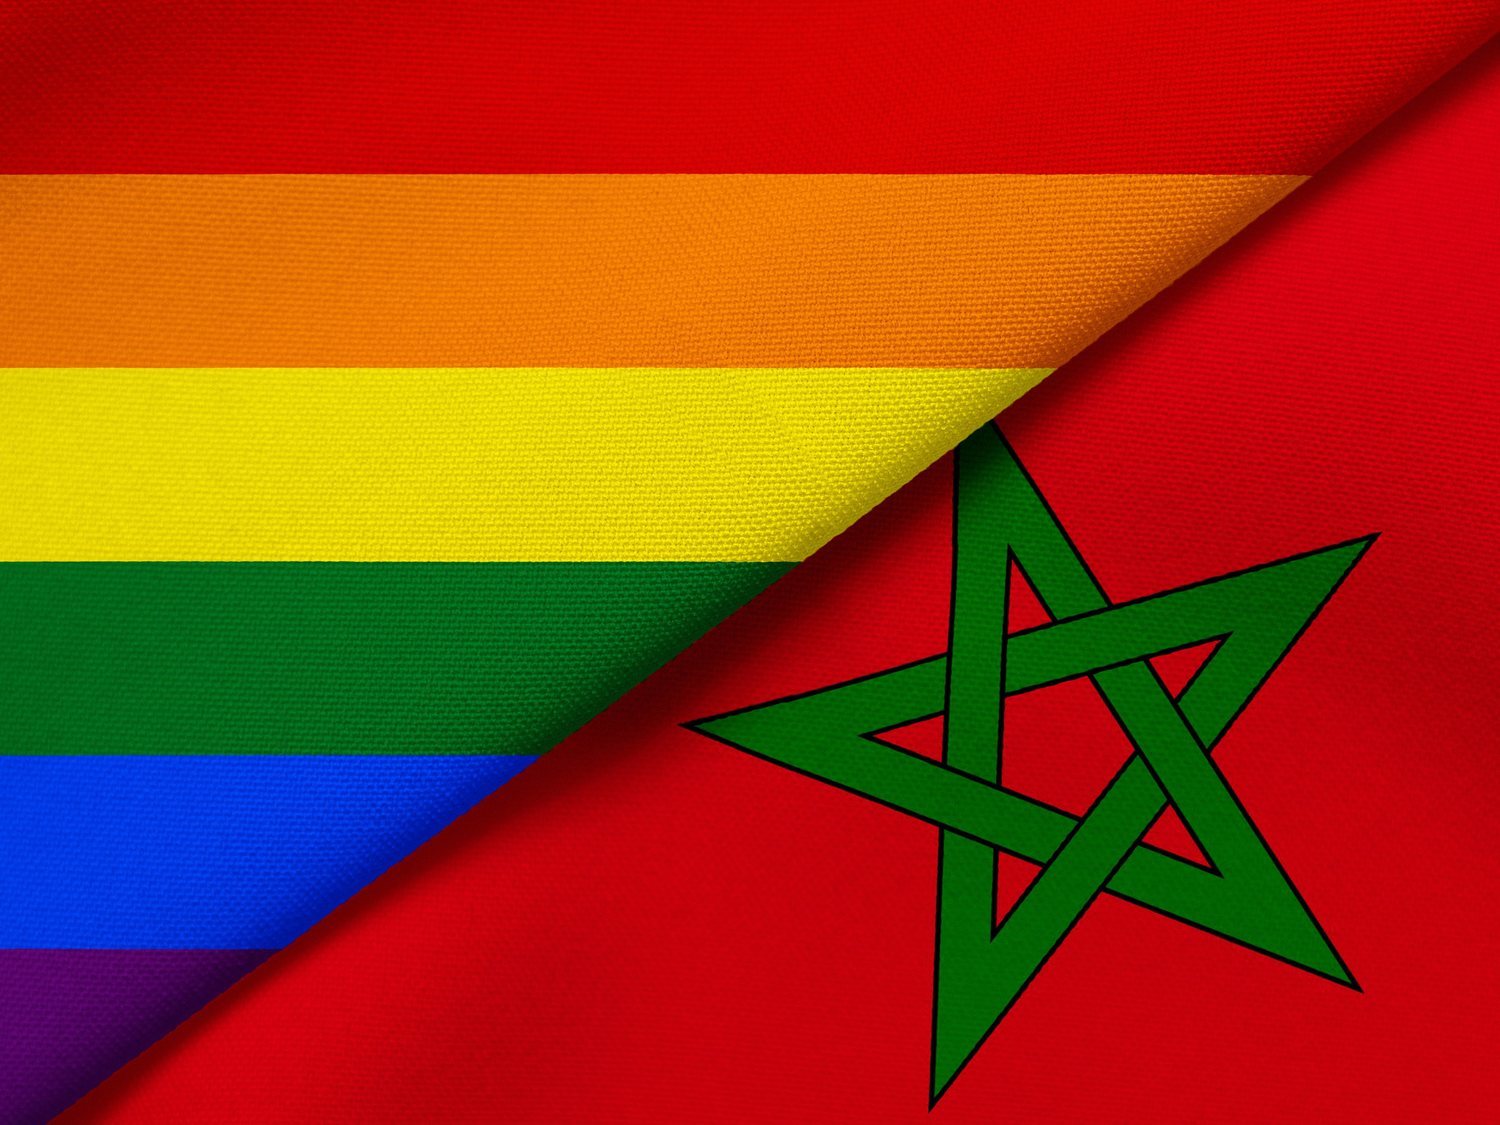 Una influencer anima a crear cuentas falsas en Grindr para "cazar" a gays en Marruecos y provoca suicidios